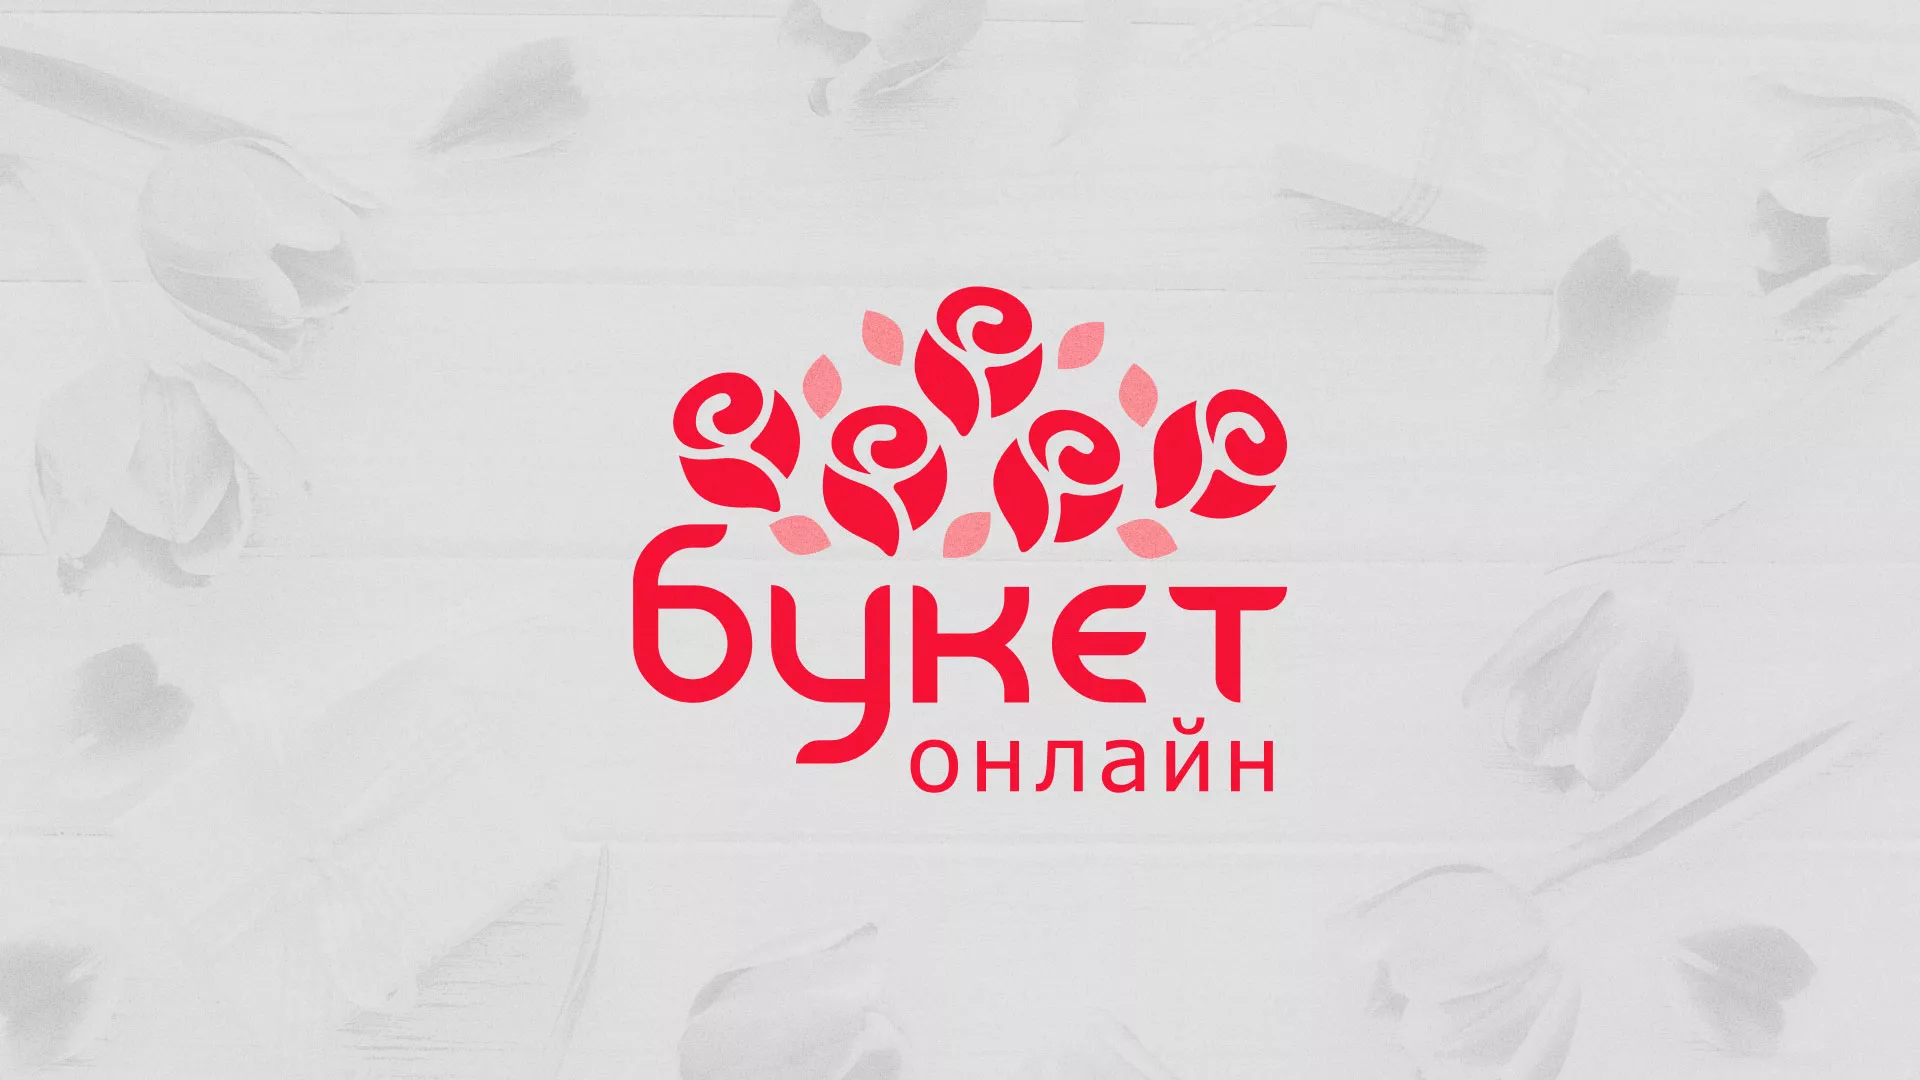 Создание интернет-магазина «Букет-онлайн» по цветам в Пугачёве